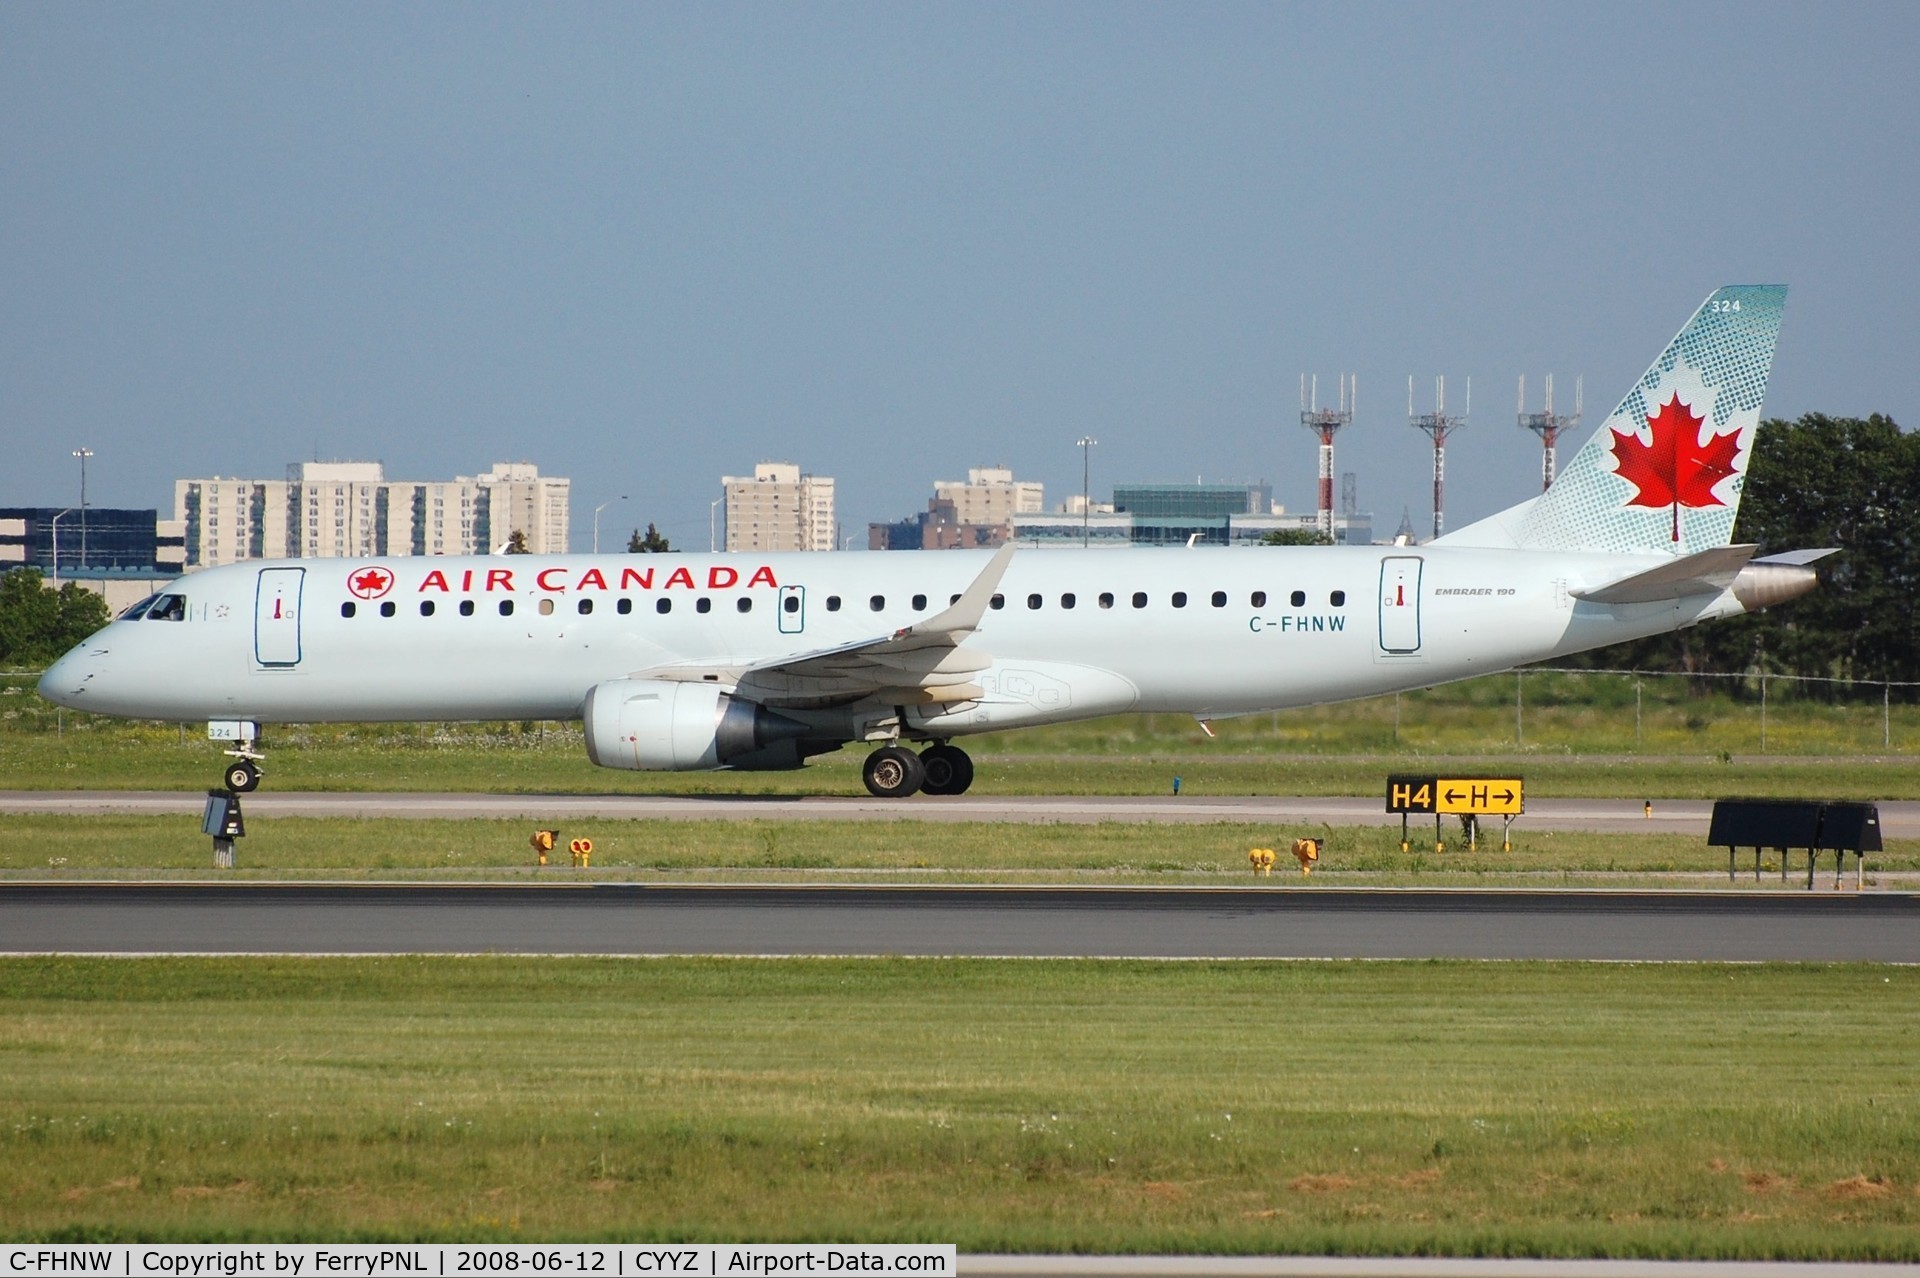 C-FHNW, 2007 Embraer 190AR (ERJ-190-100IGW) C/N 19000077, Air Canada ERJ190 taxying to the terminal